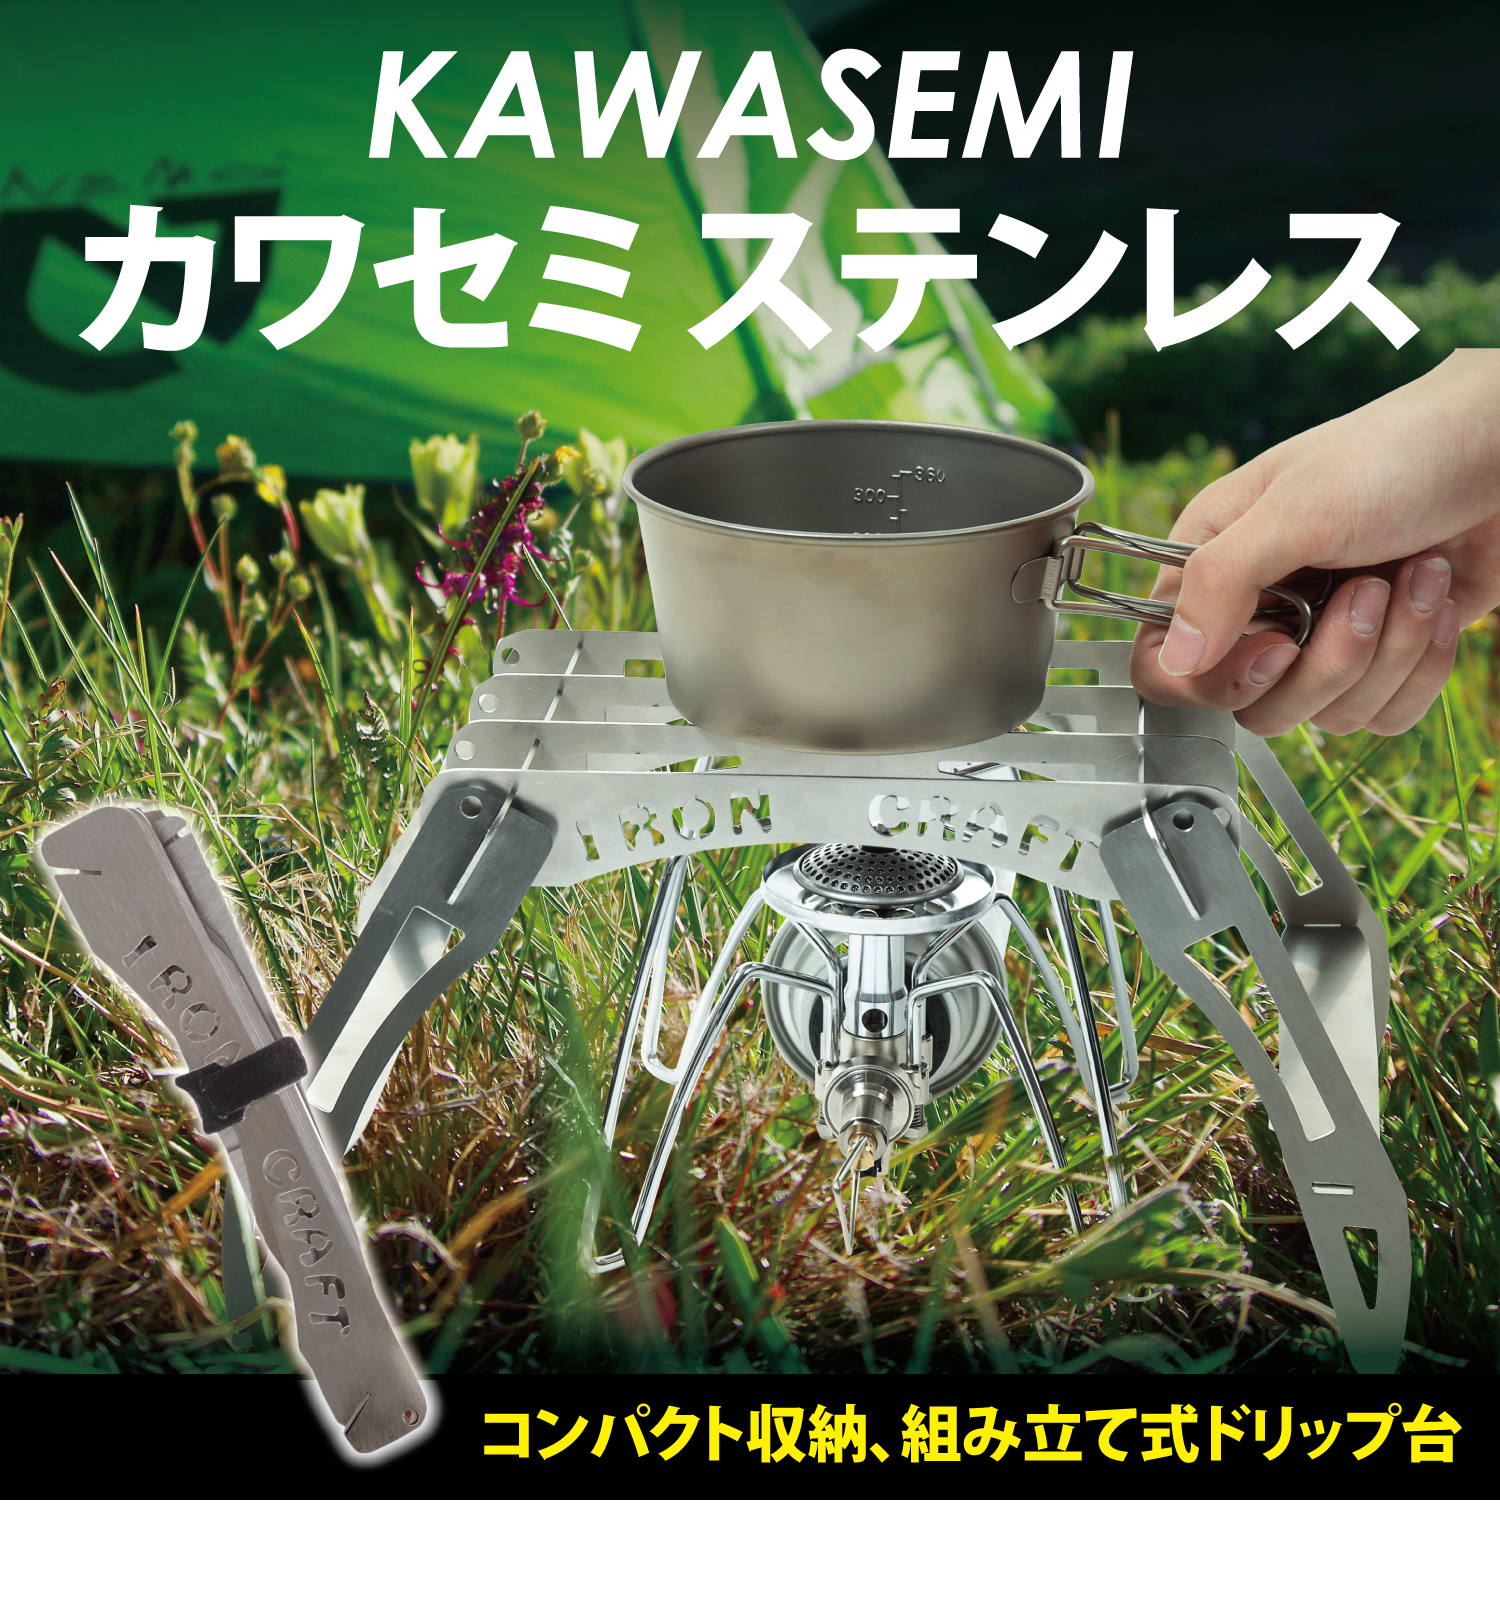 アイアンクラフト カワセミ kawasemiが人気。イザナミハーフはふるさと 